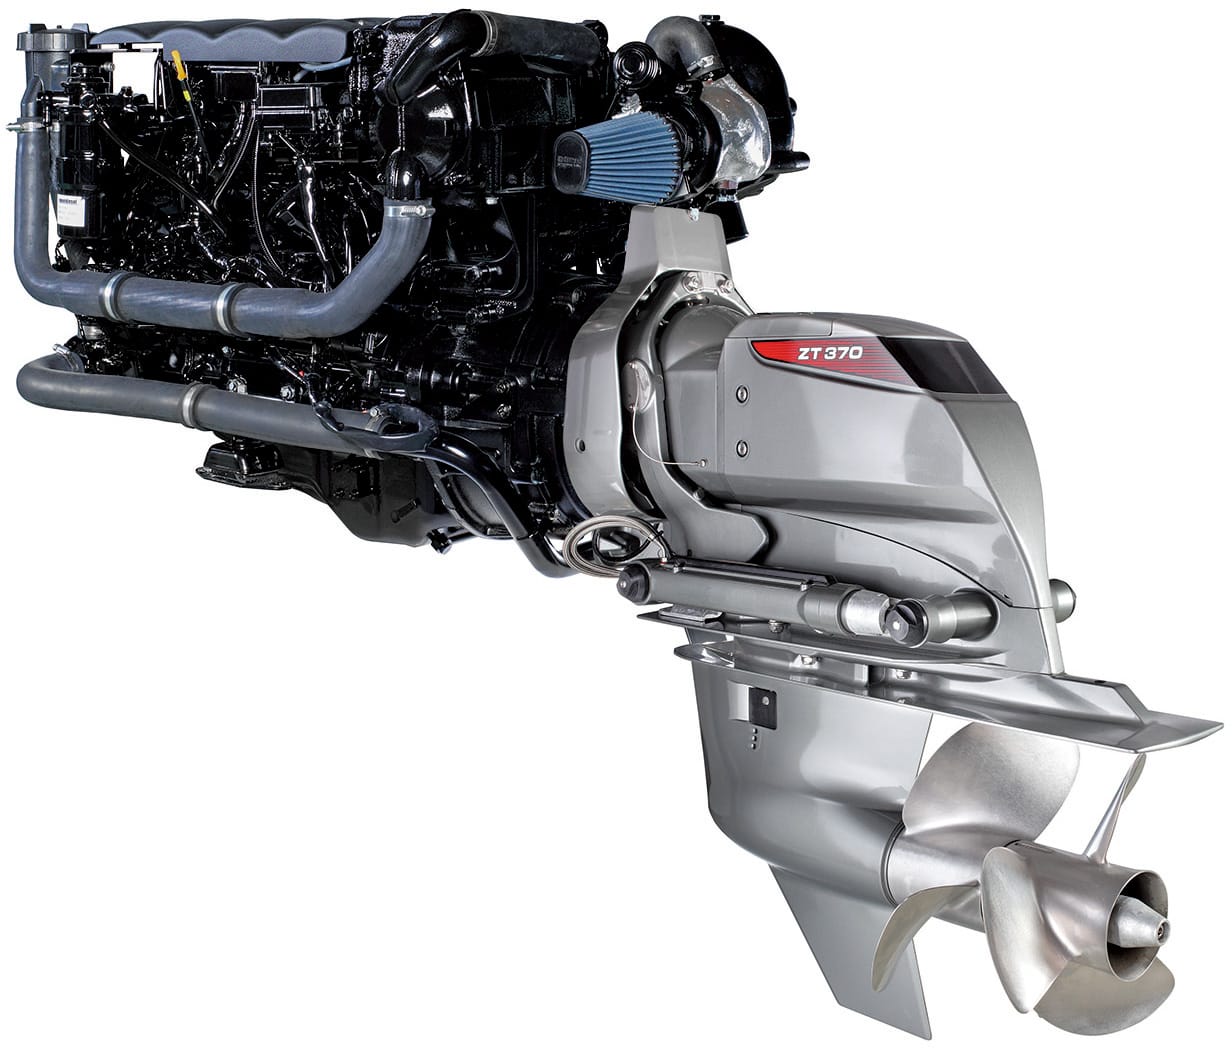 Den Vortrieb übernimmt der 3,0-Liter-Dieselmotor, der schon in der Ponam-31 zum Einsatz kommt: Der aus dem Toyota Land Cruiser stammende Vierzylinder mit Direkteinspritzung leistet 260 PS.